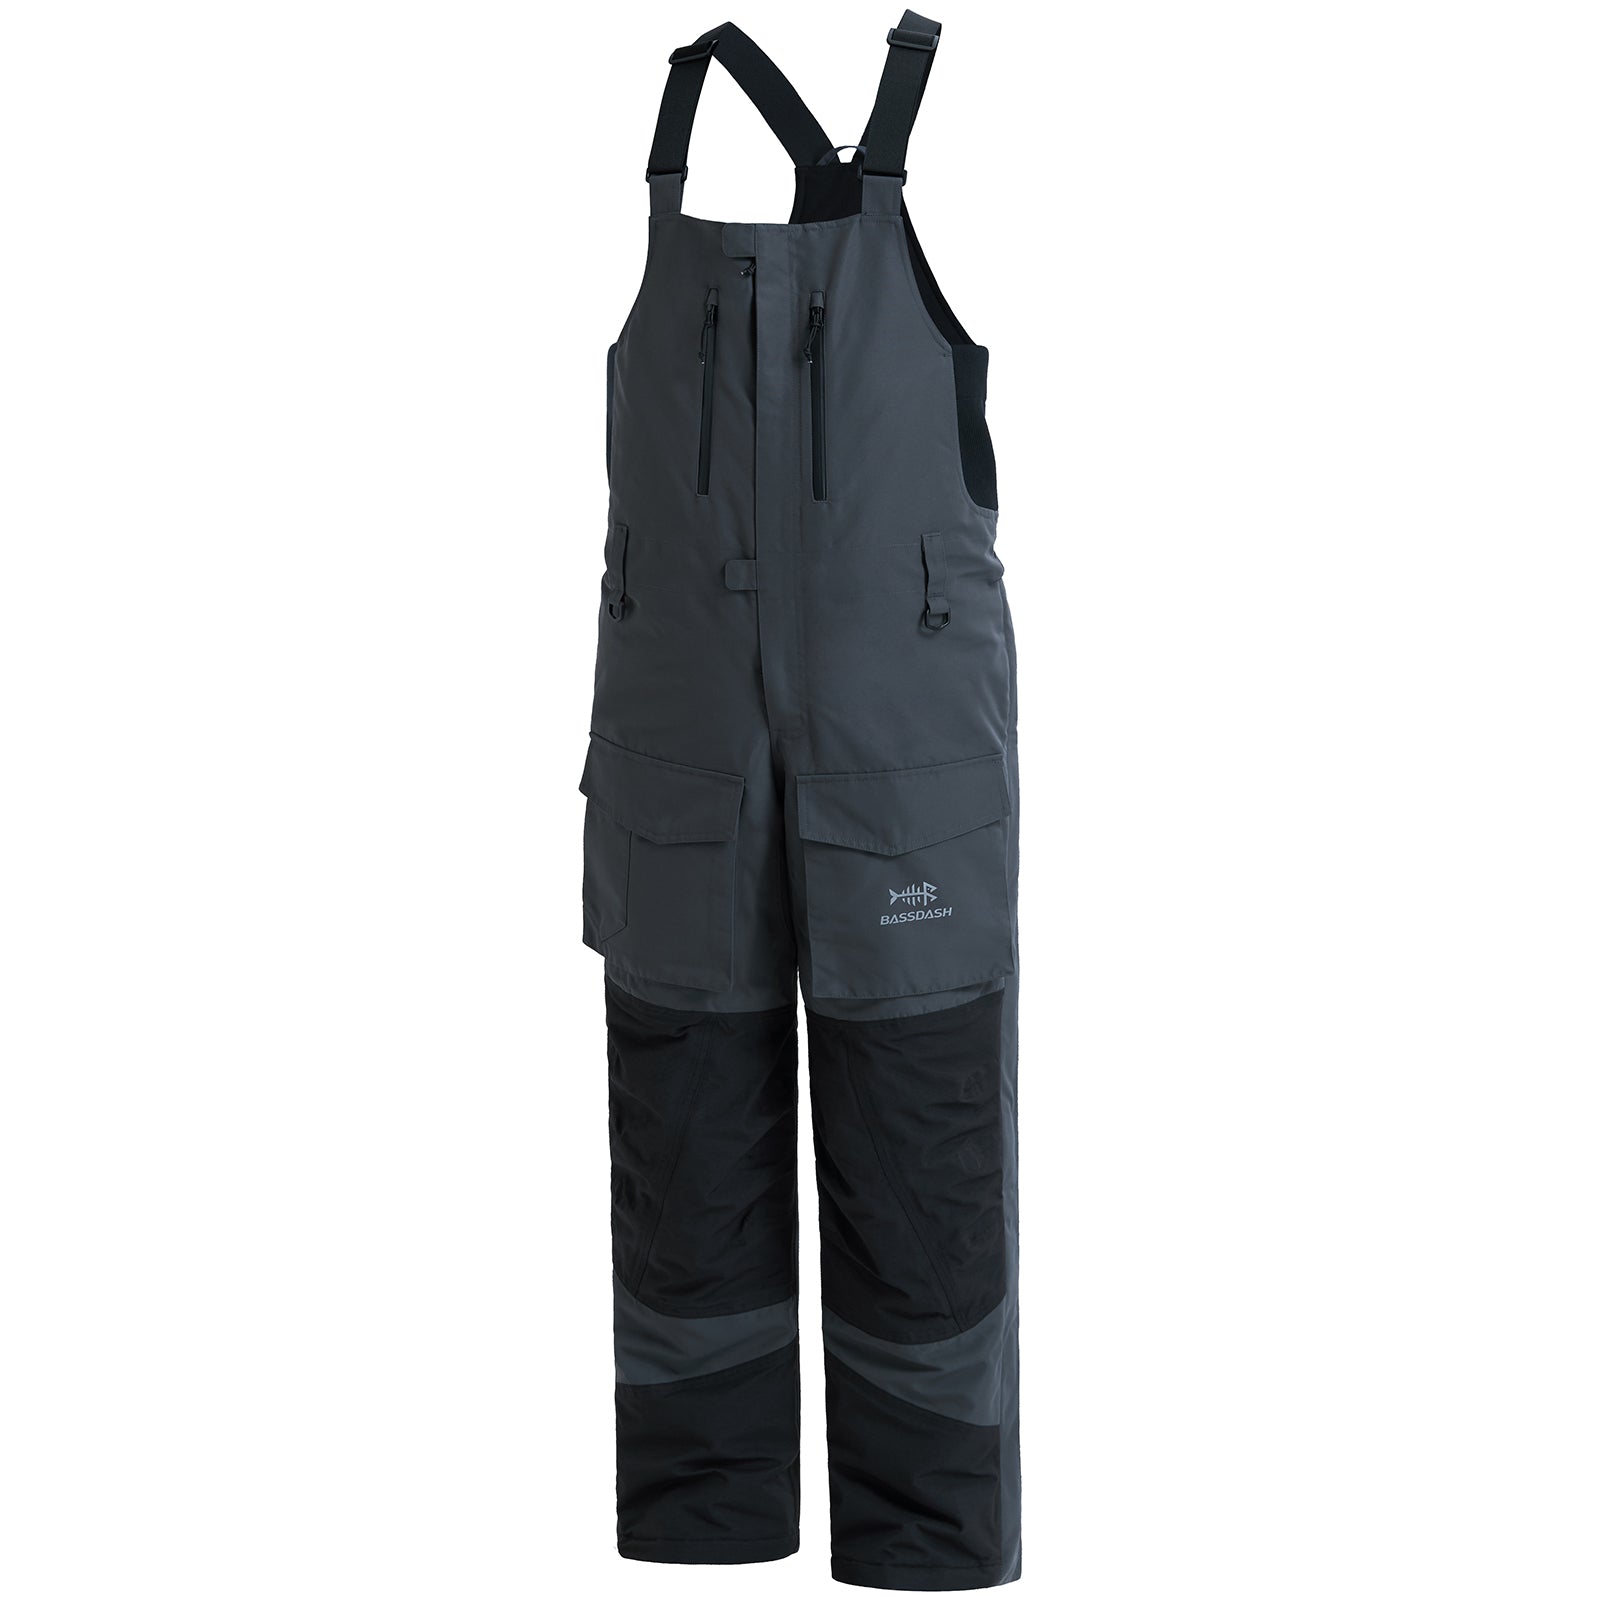 Men's Insulated Fishing Bibs - Bassdash Ice Fishing Clothing Dark Grey/Black / X-Large